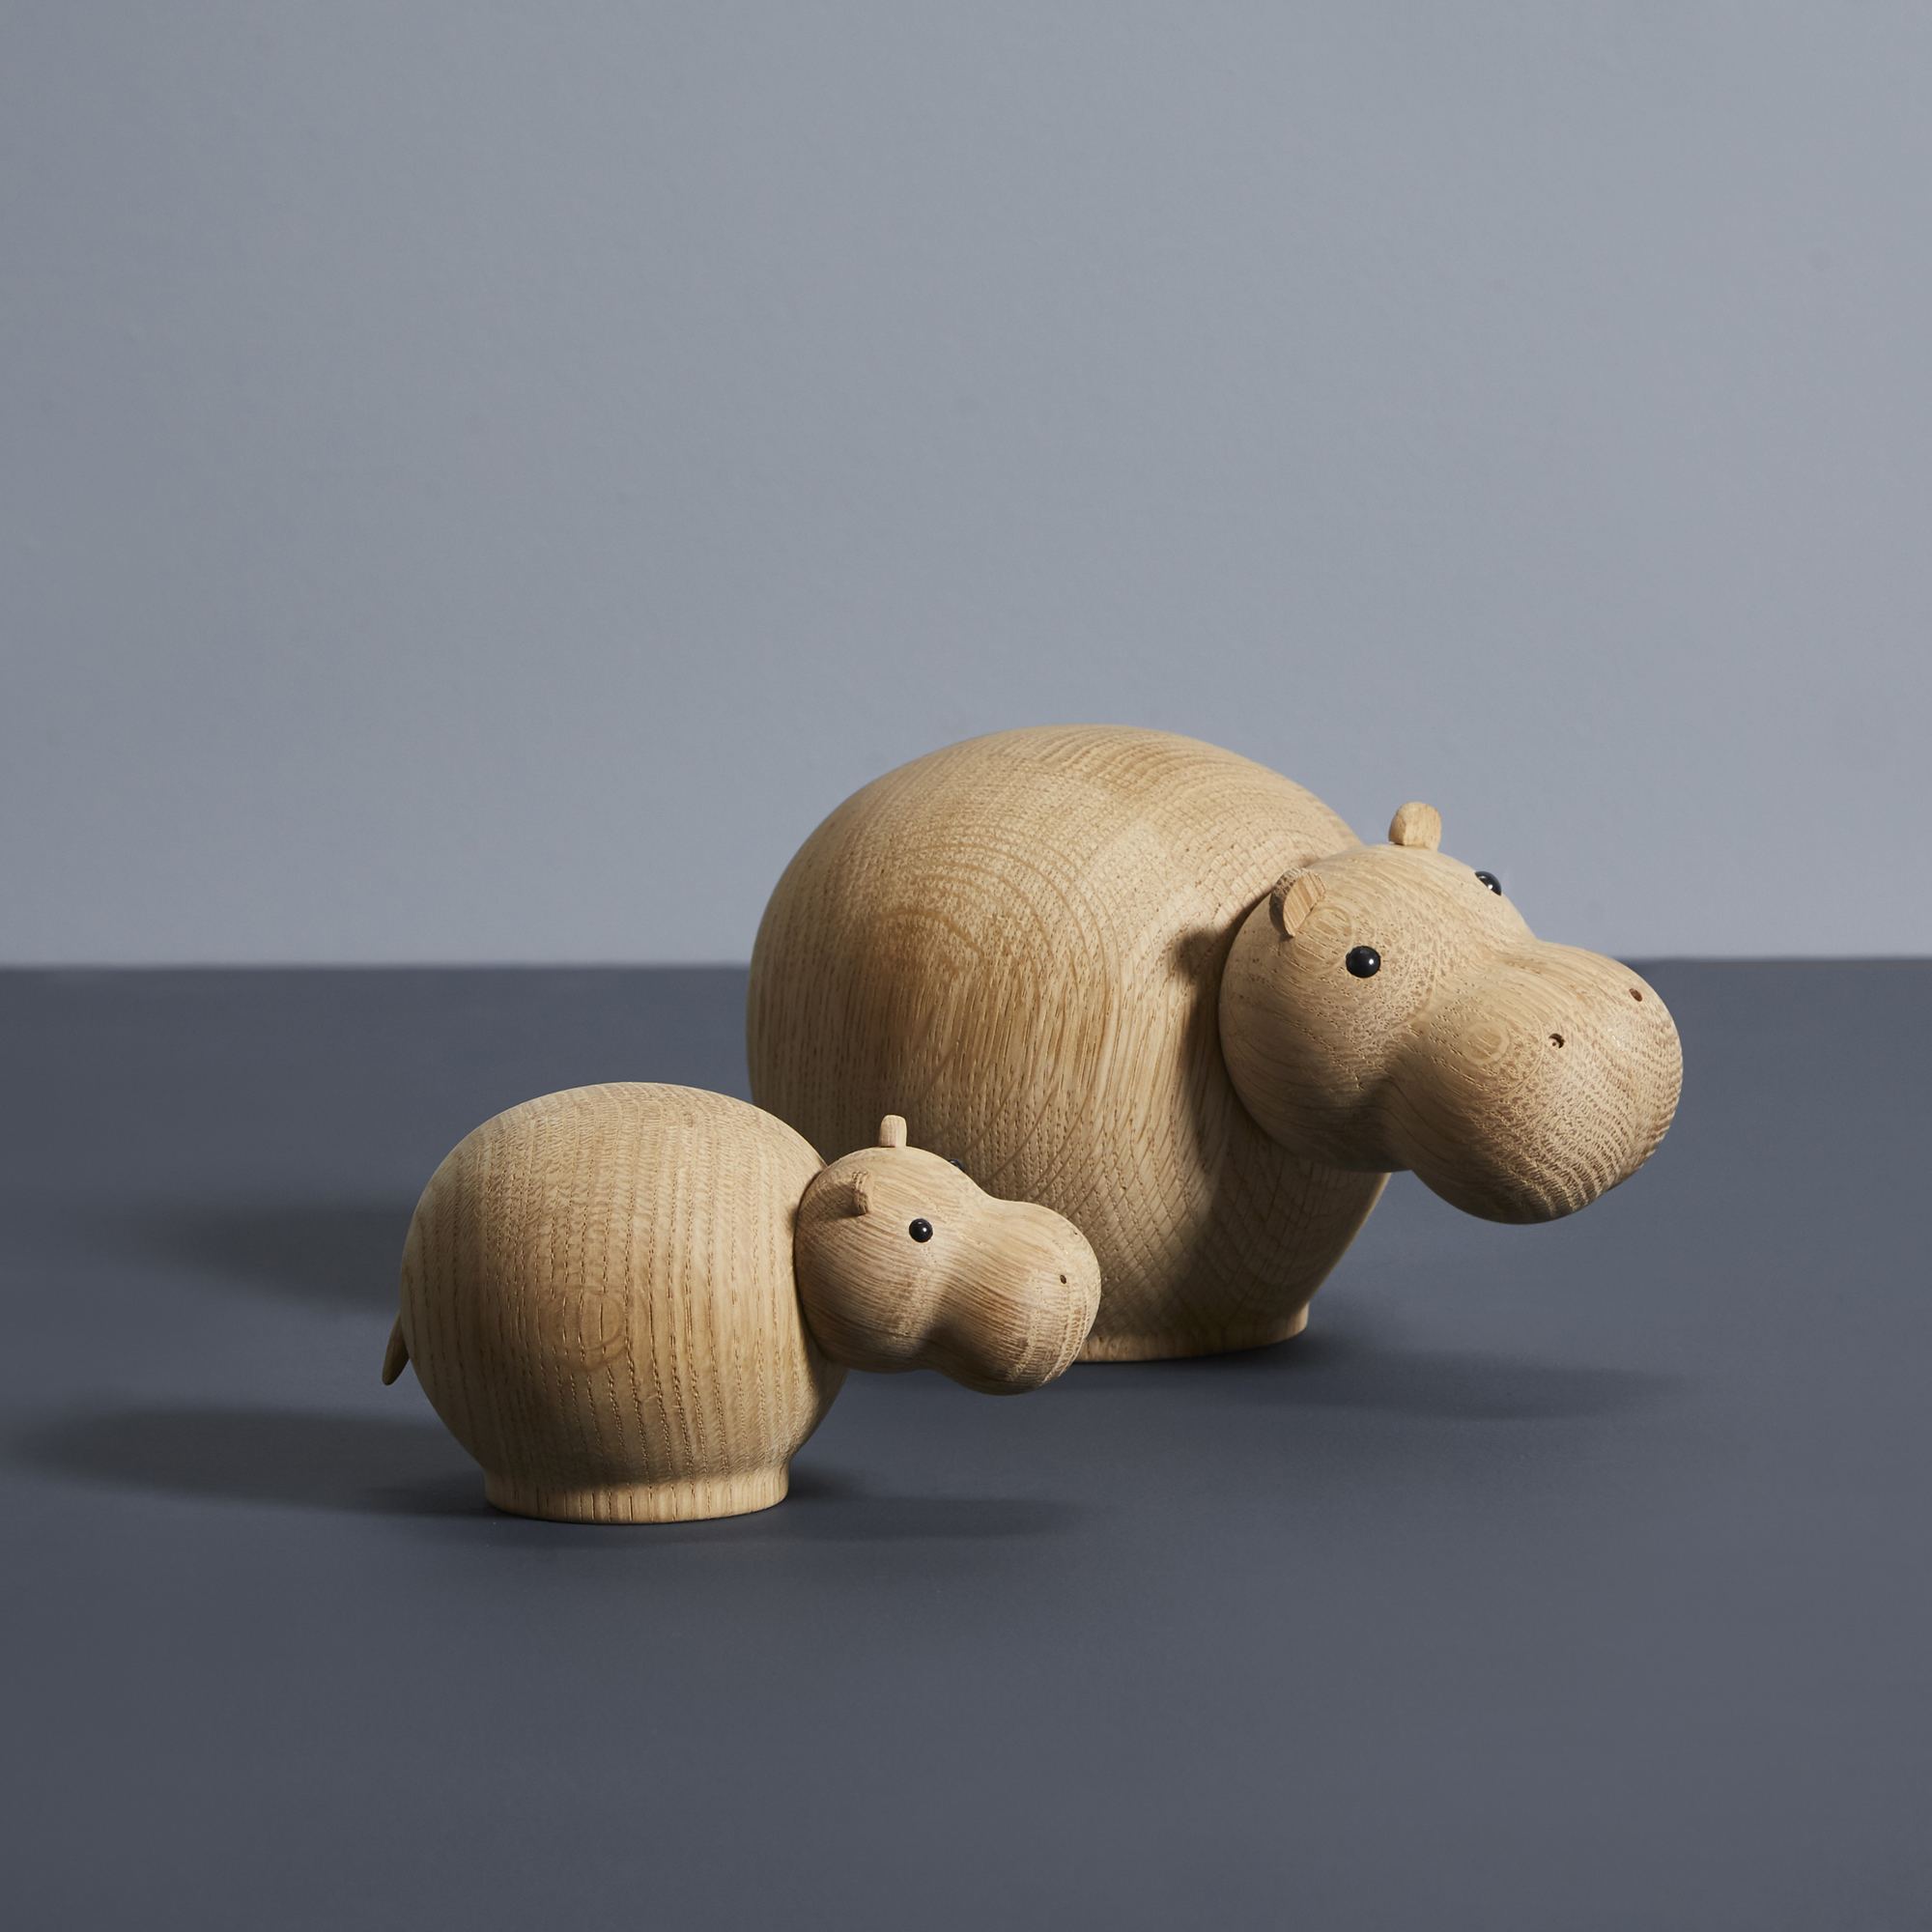 Hippo Nielpferd Holz Tier Afrika Figur Kinder Spielzeug KTier60 